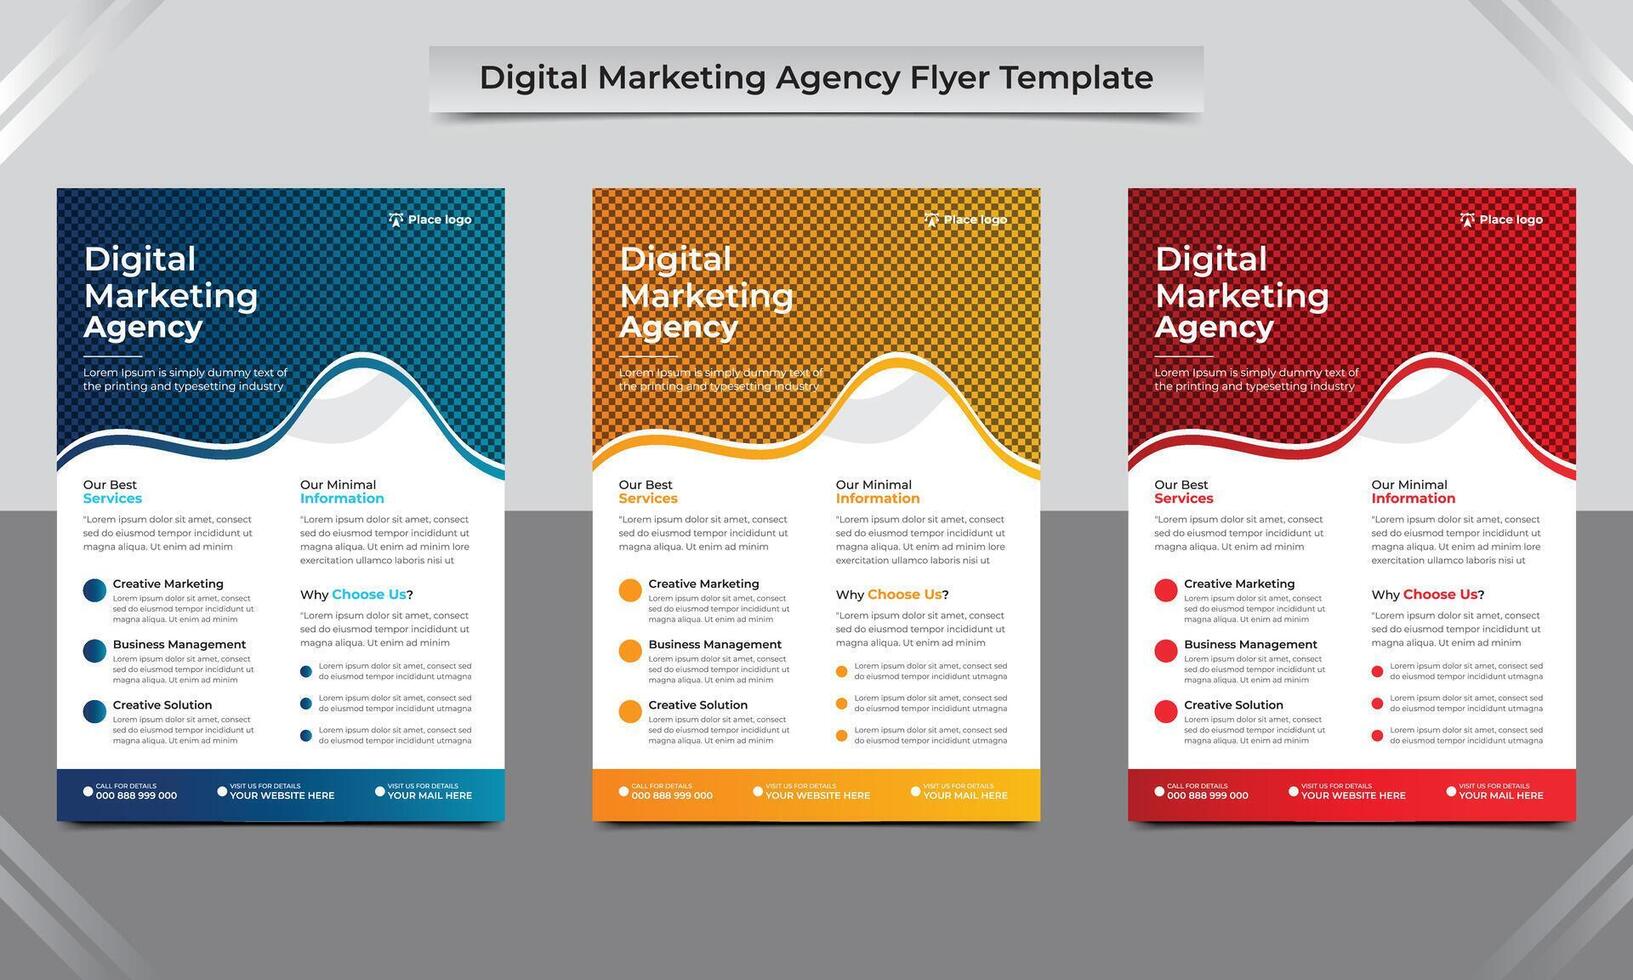 digital marketing agência folheto folheto design, corporativo o negócio folheto, o negócio proposta, anual relatório, digital marketing agência folheto dentro a4 modelo. vetor ilustração.